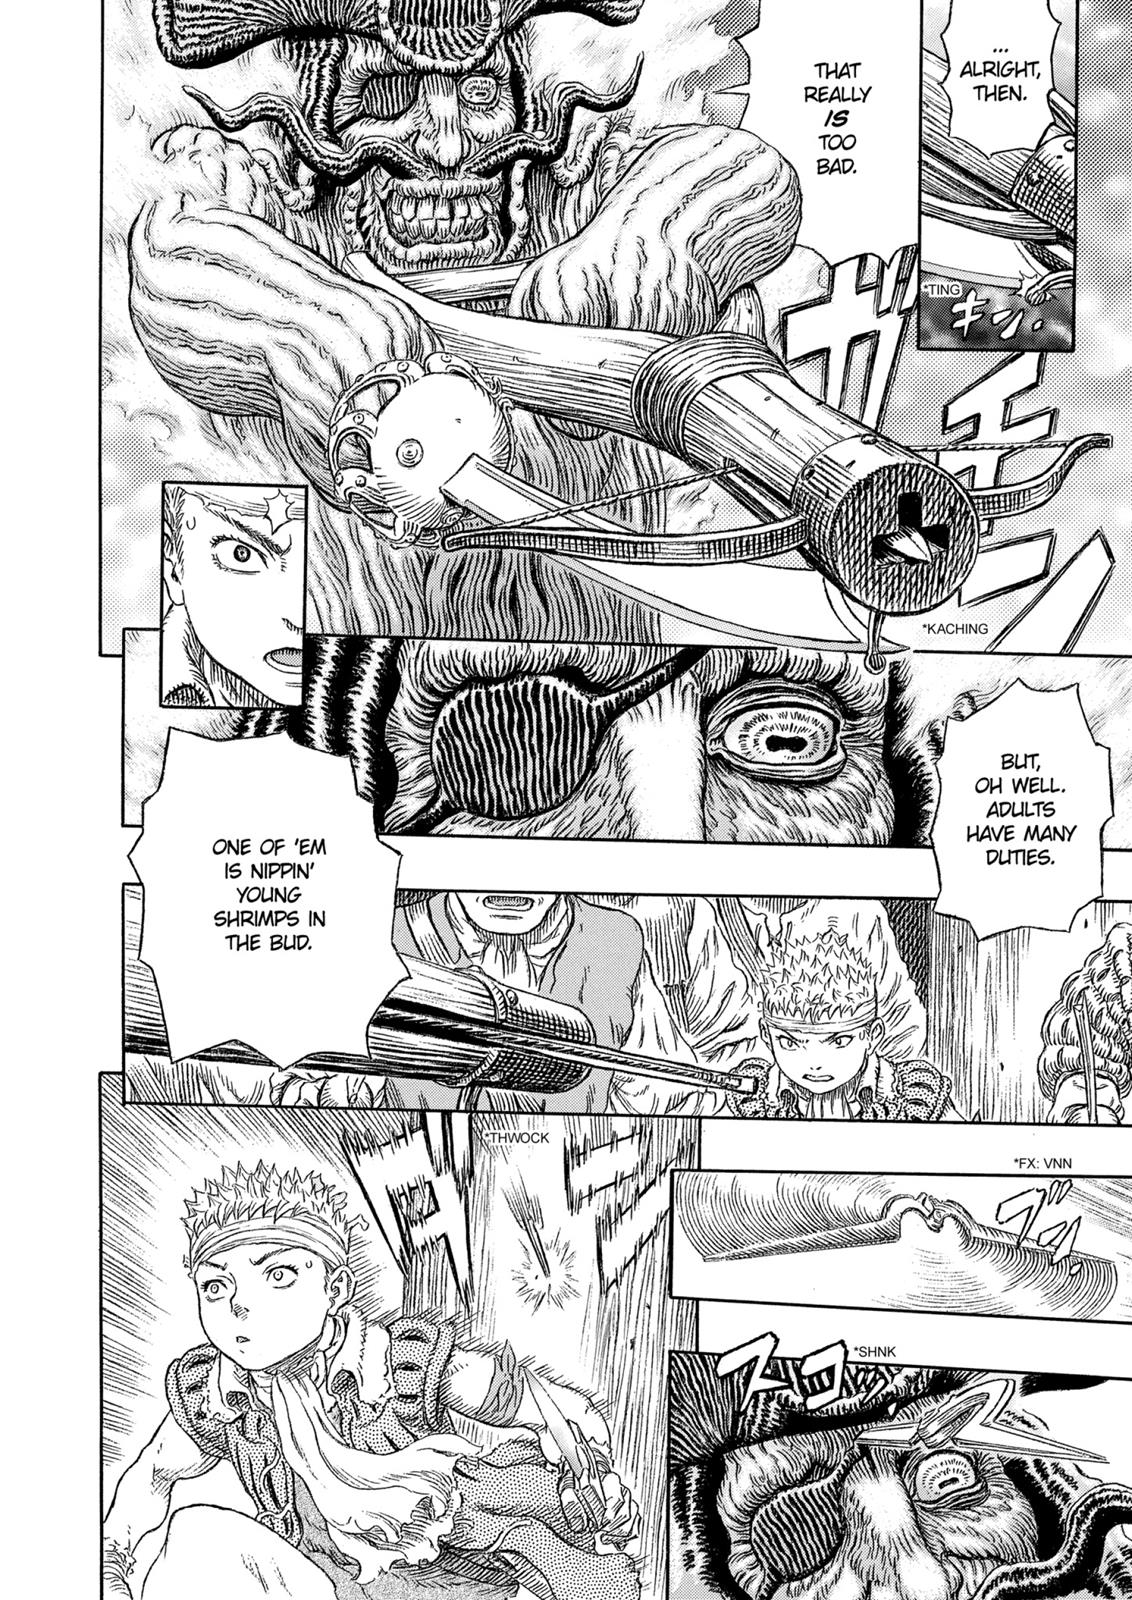 Berserk Manga Chapter 322 image 05